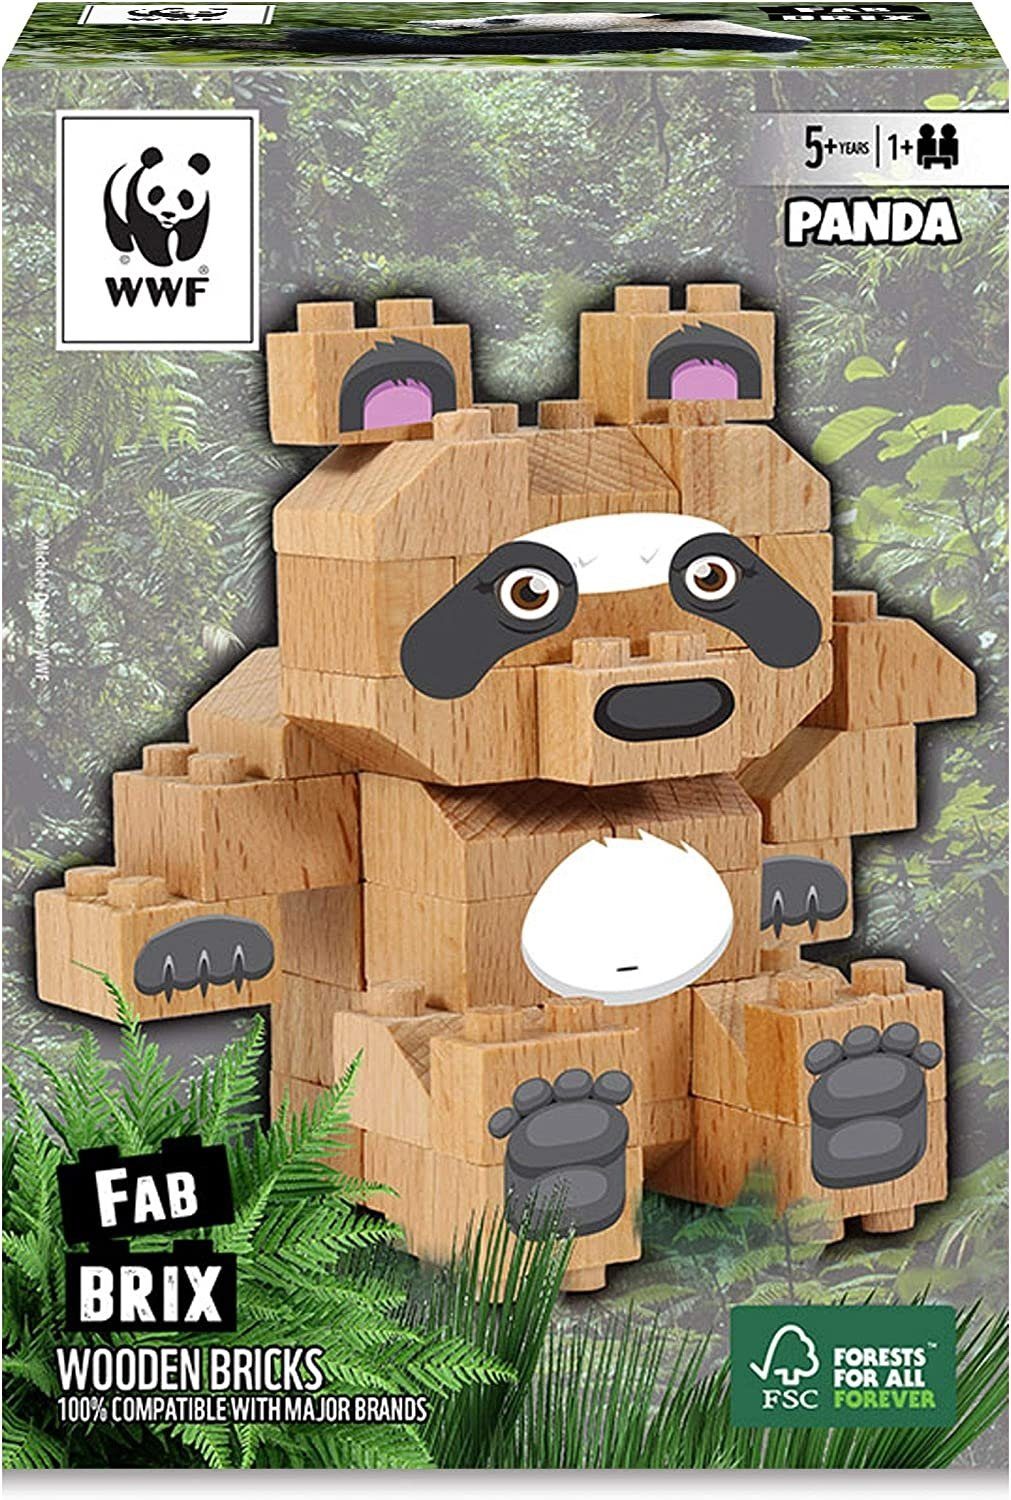 Wooden mit Bricks Spielbausteine WWF FabBrix Bär konventionellen Bausteinen PANDA kompatibel 100% Holzbausteine, WWF